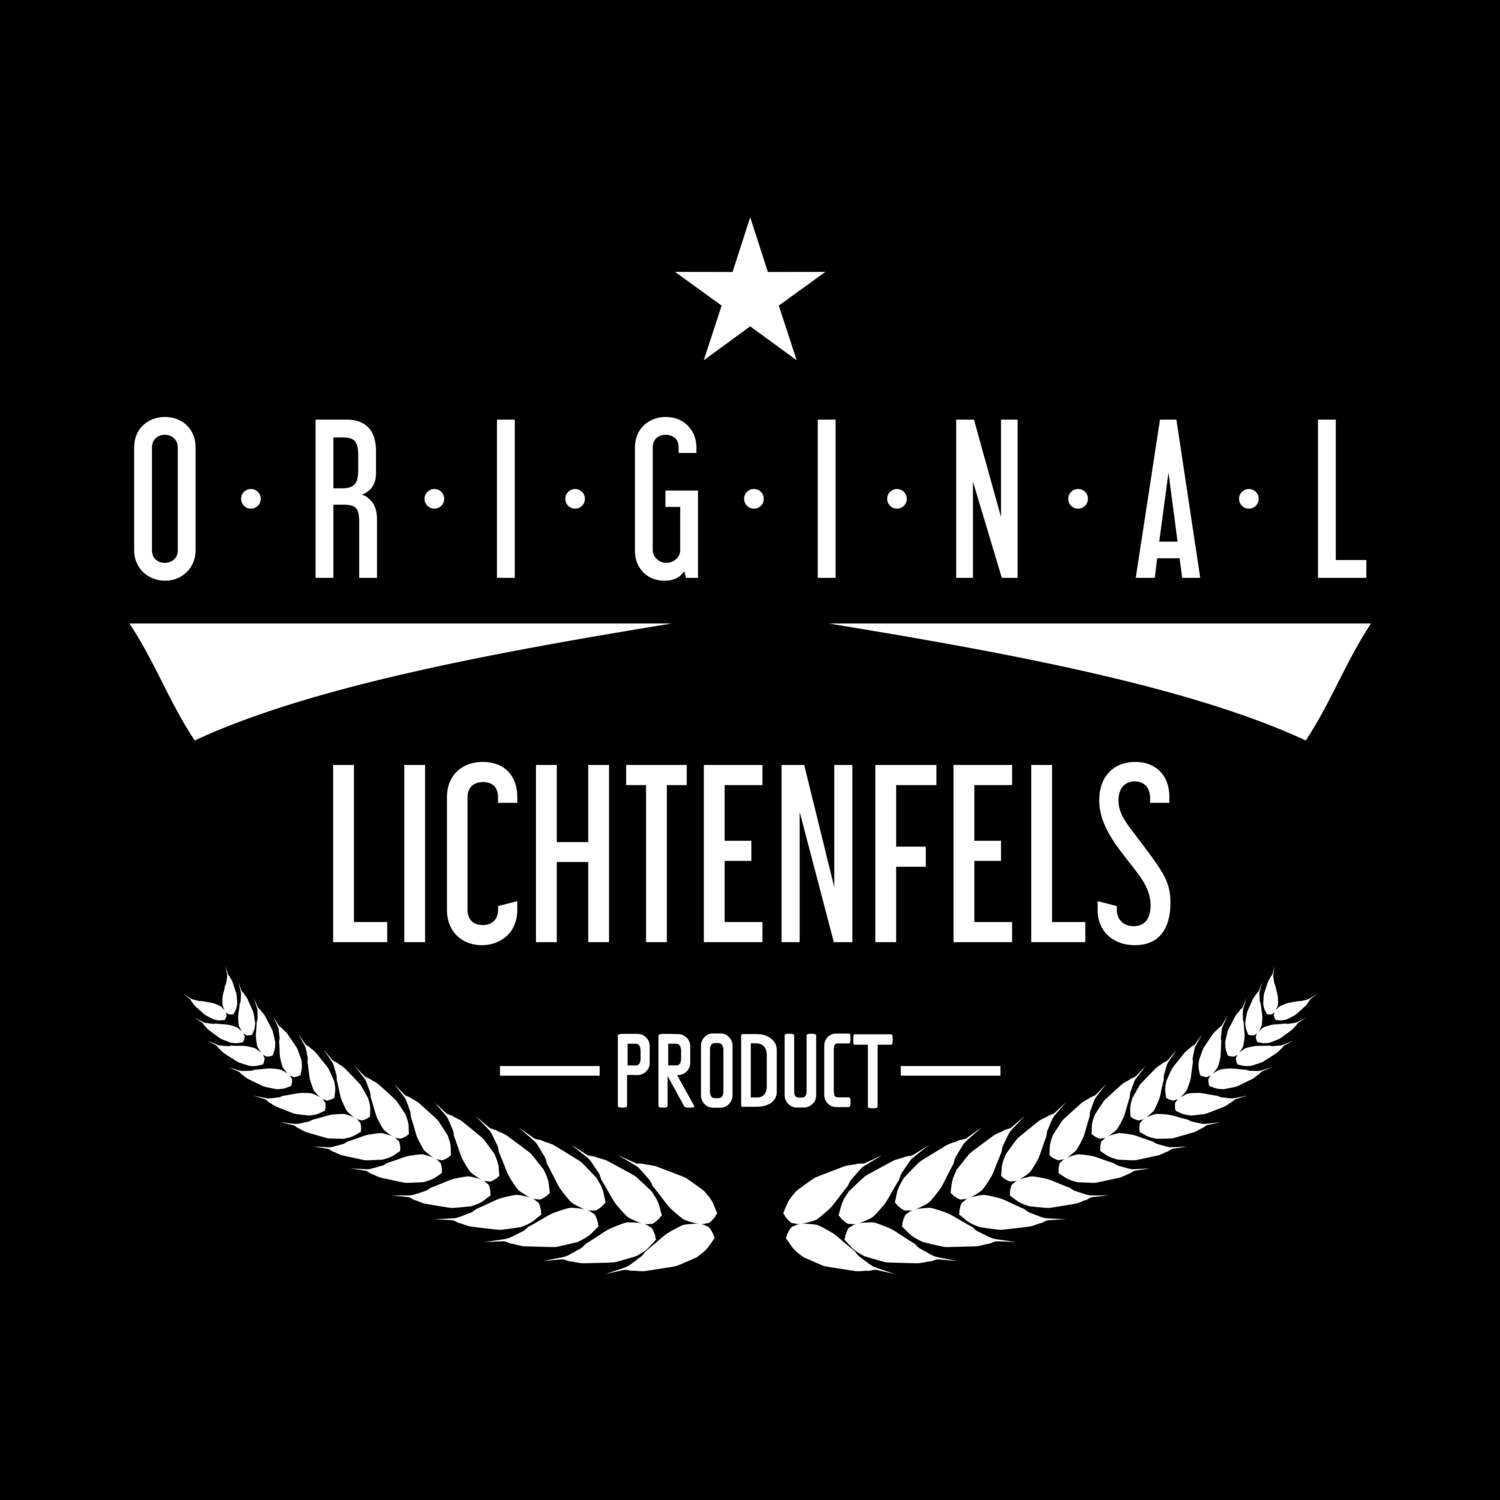 Lichtenfels T-Shirt »Original Product«